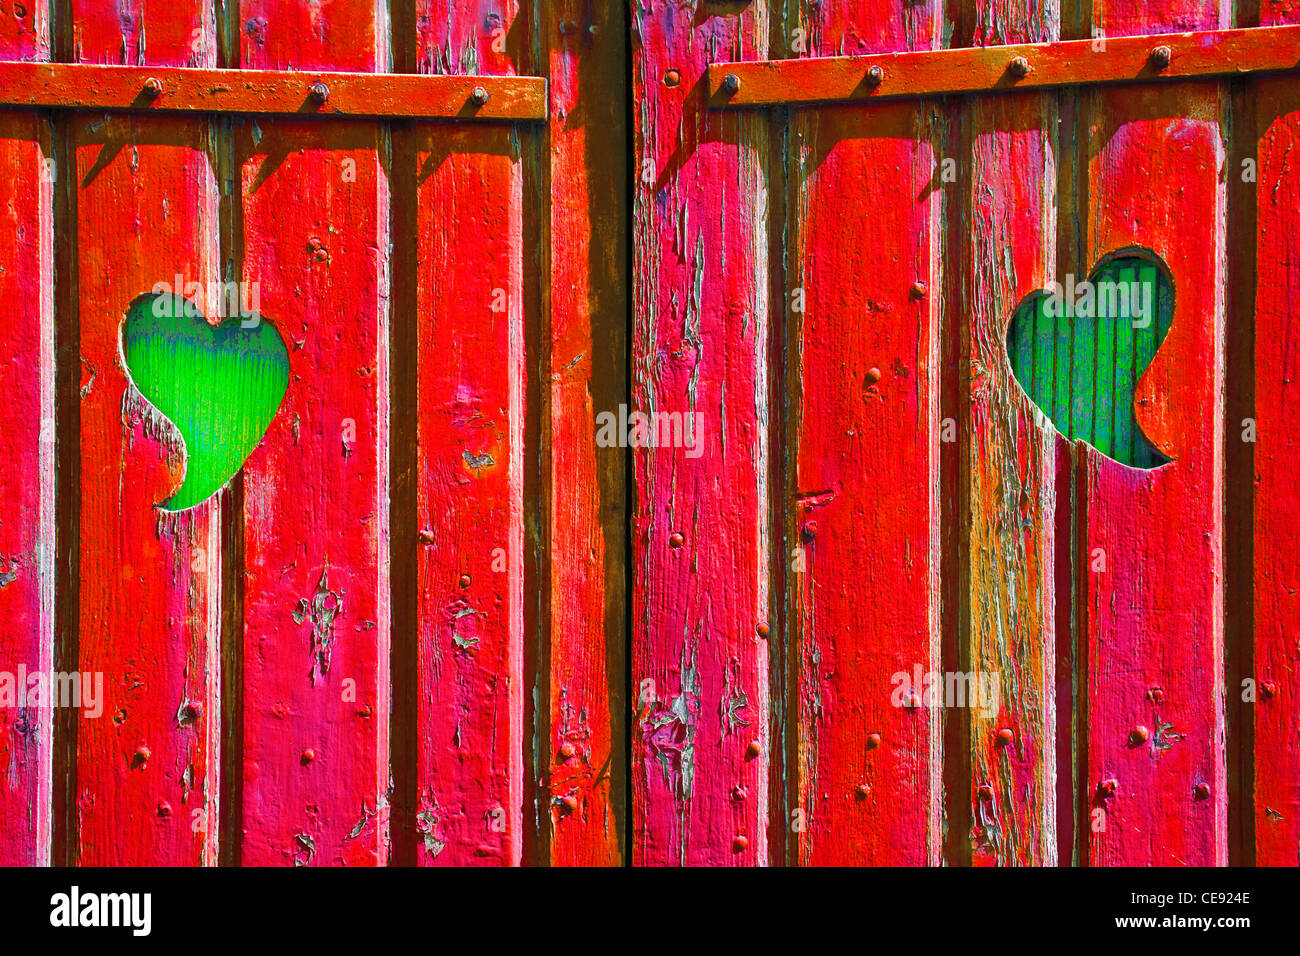 Deux formes de coeur coupé en une porte en bois rouge révélant le bois vert derrière, symbolique de l'envie, la jalousie, la passion Banque D'Images